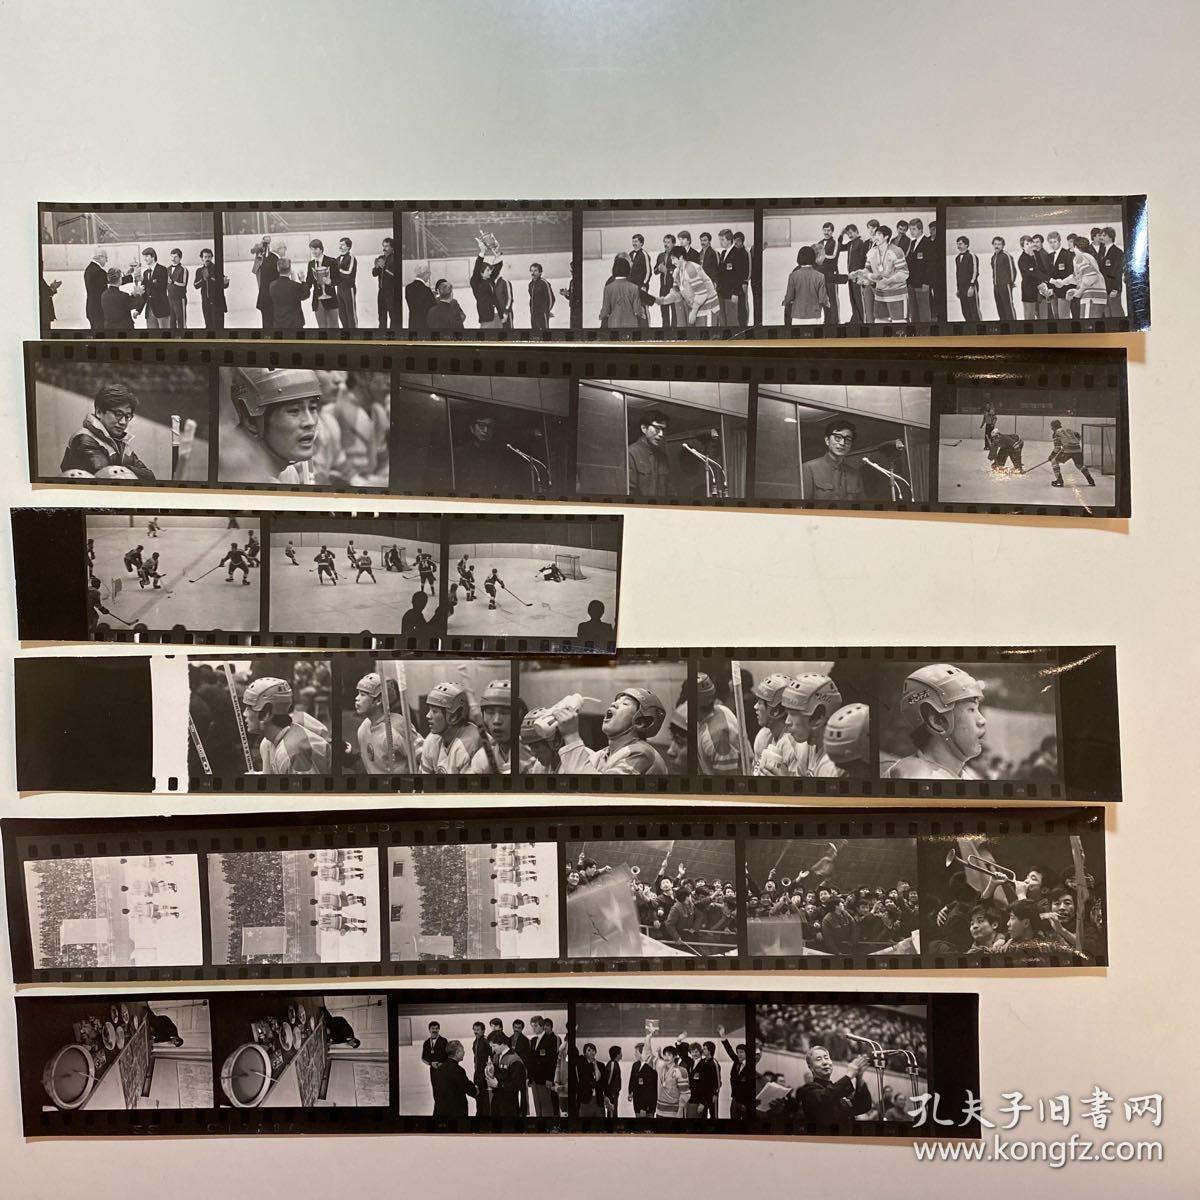 李晓斌（著名摄影家、“四月影会”发起人、创始人） 摄影作品《冰球比赛照片 对朝鲜闭幕式》一组 30余张，带底片